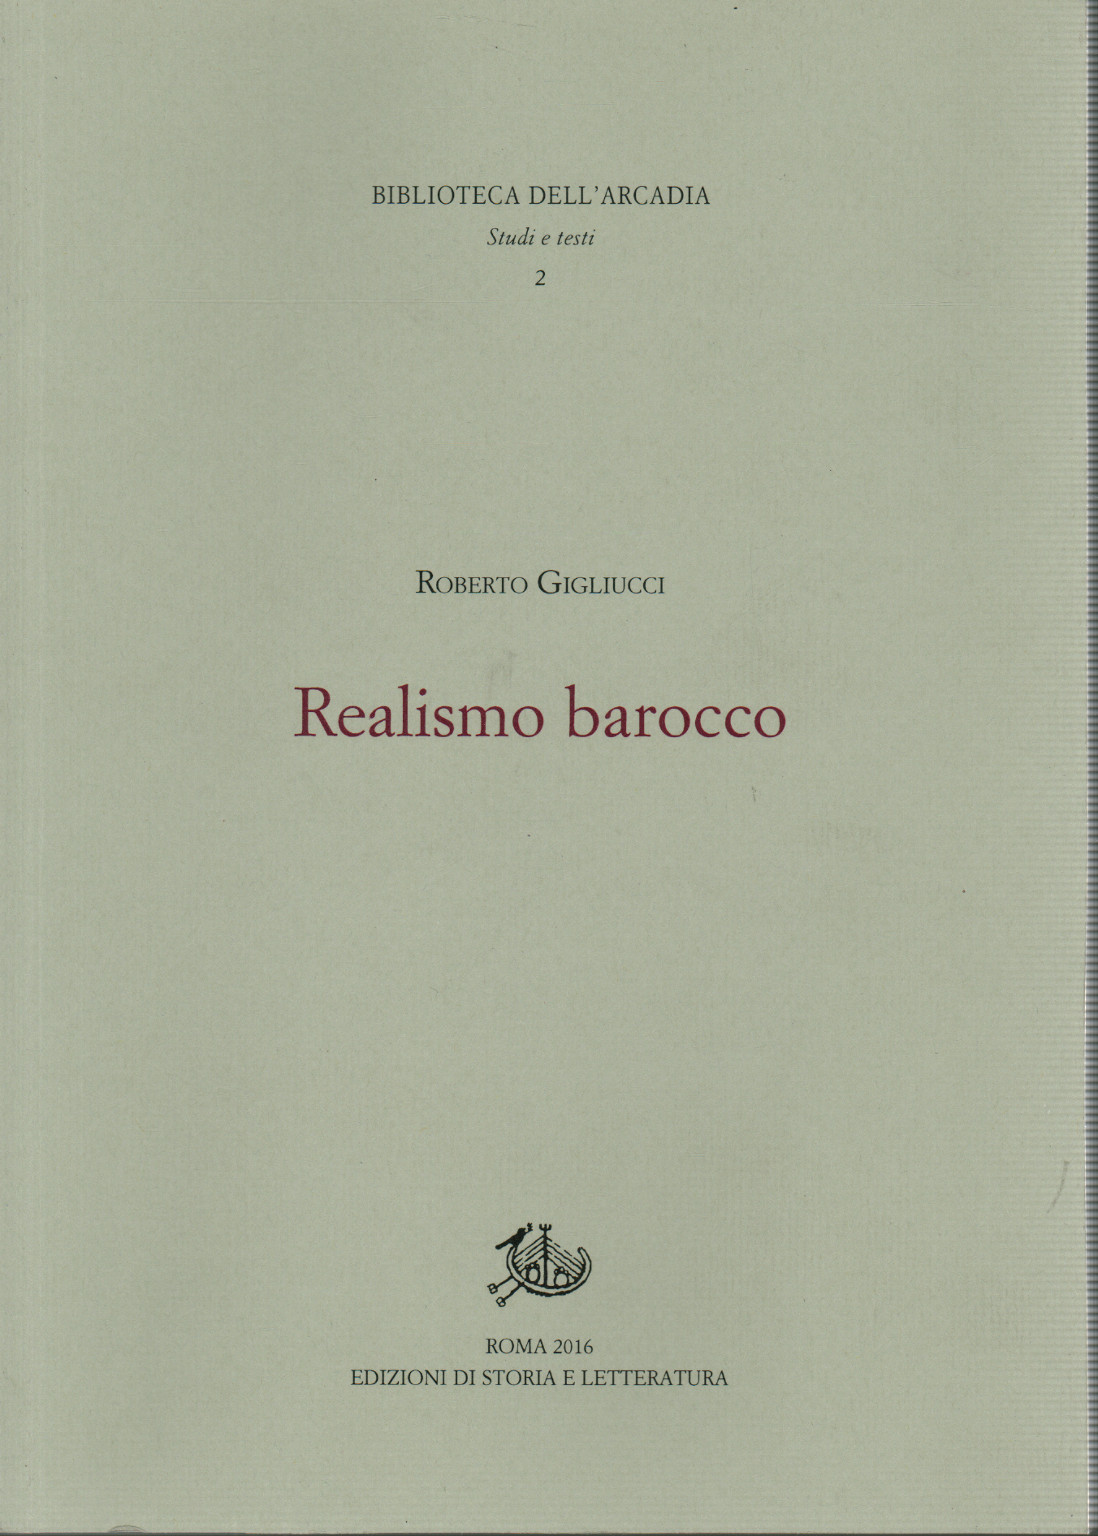 Realismo barocco, s.a.